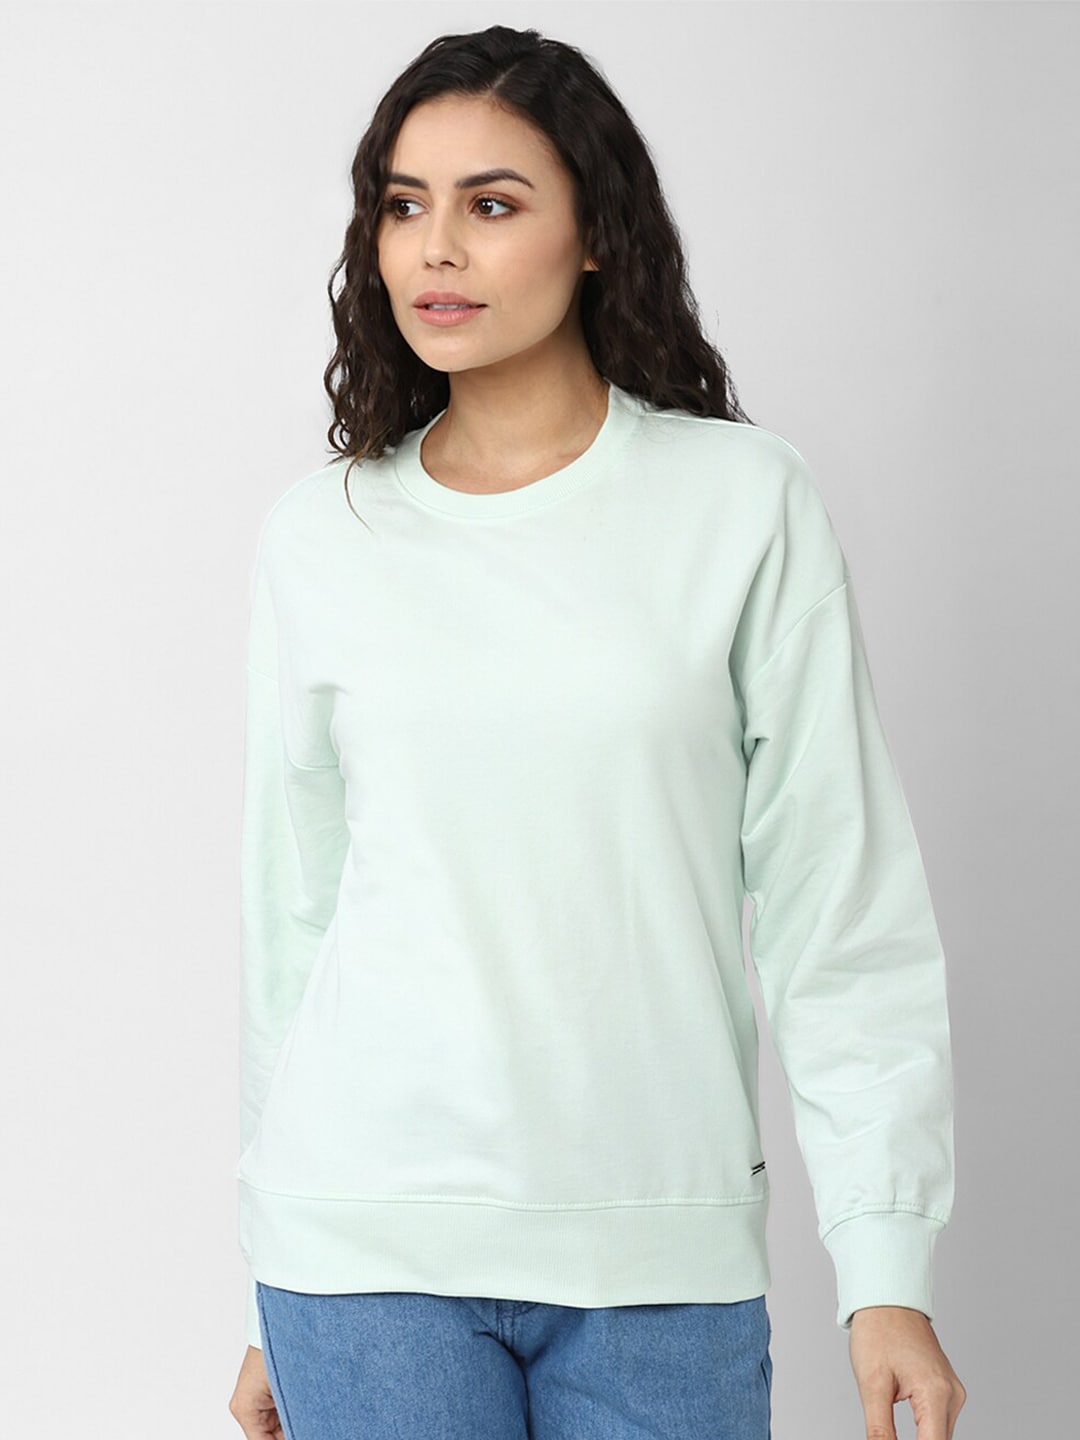 Van Heusen Woman Women Green Sweatshirt Price in India